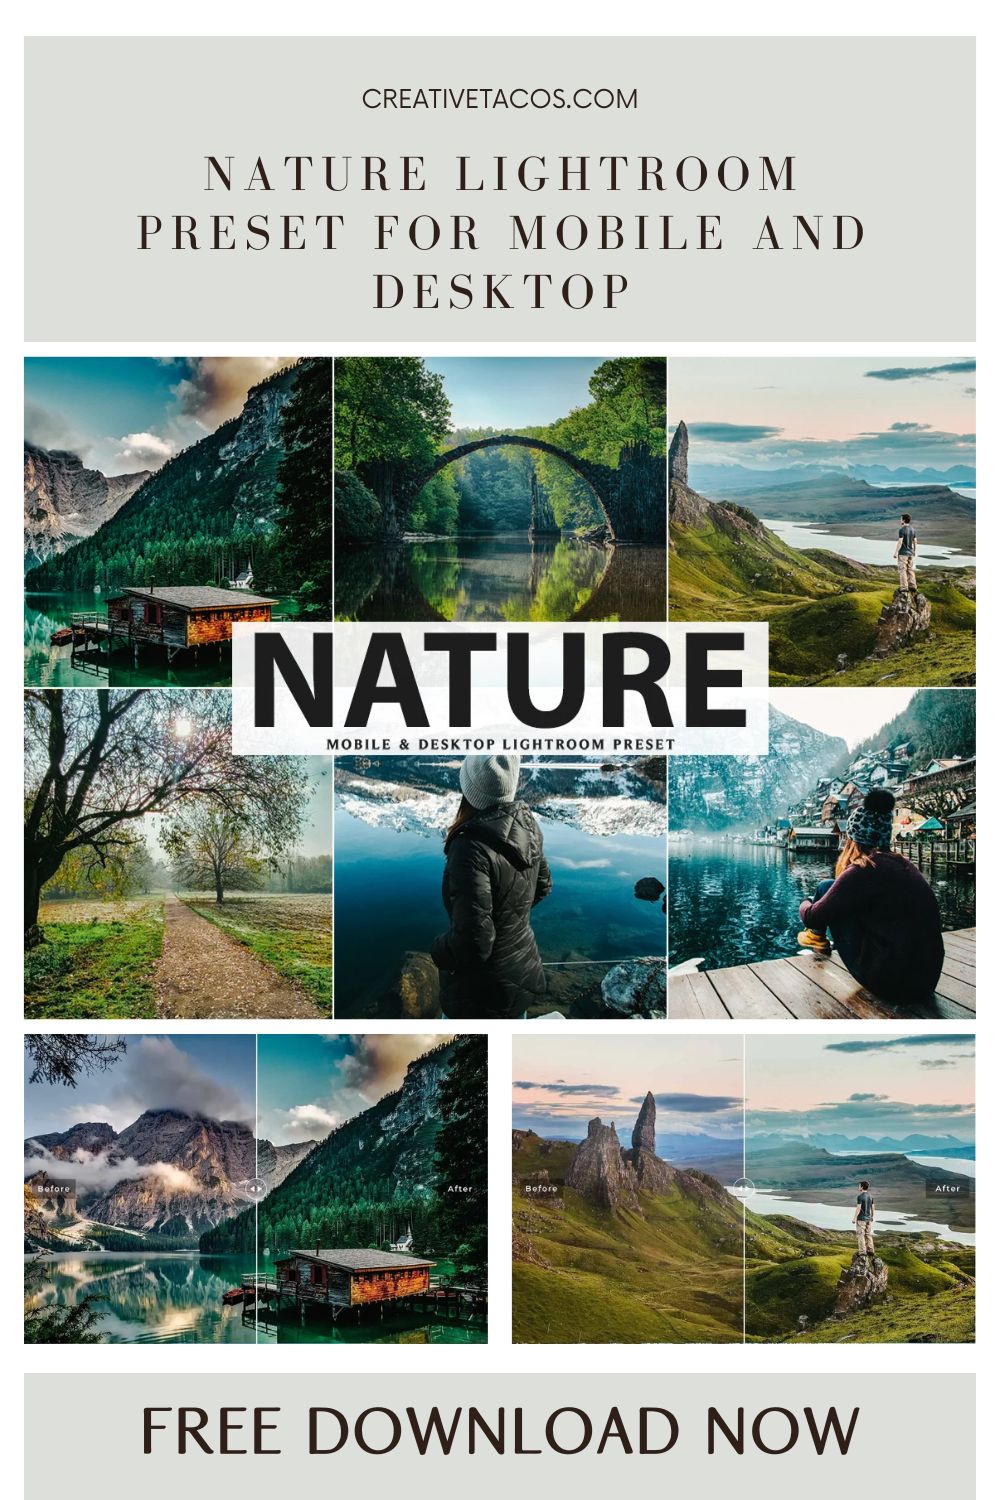 Nature Lightroom Preset For Mobile and Desktop